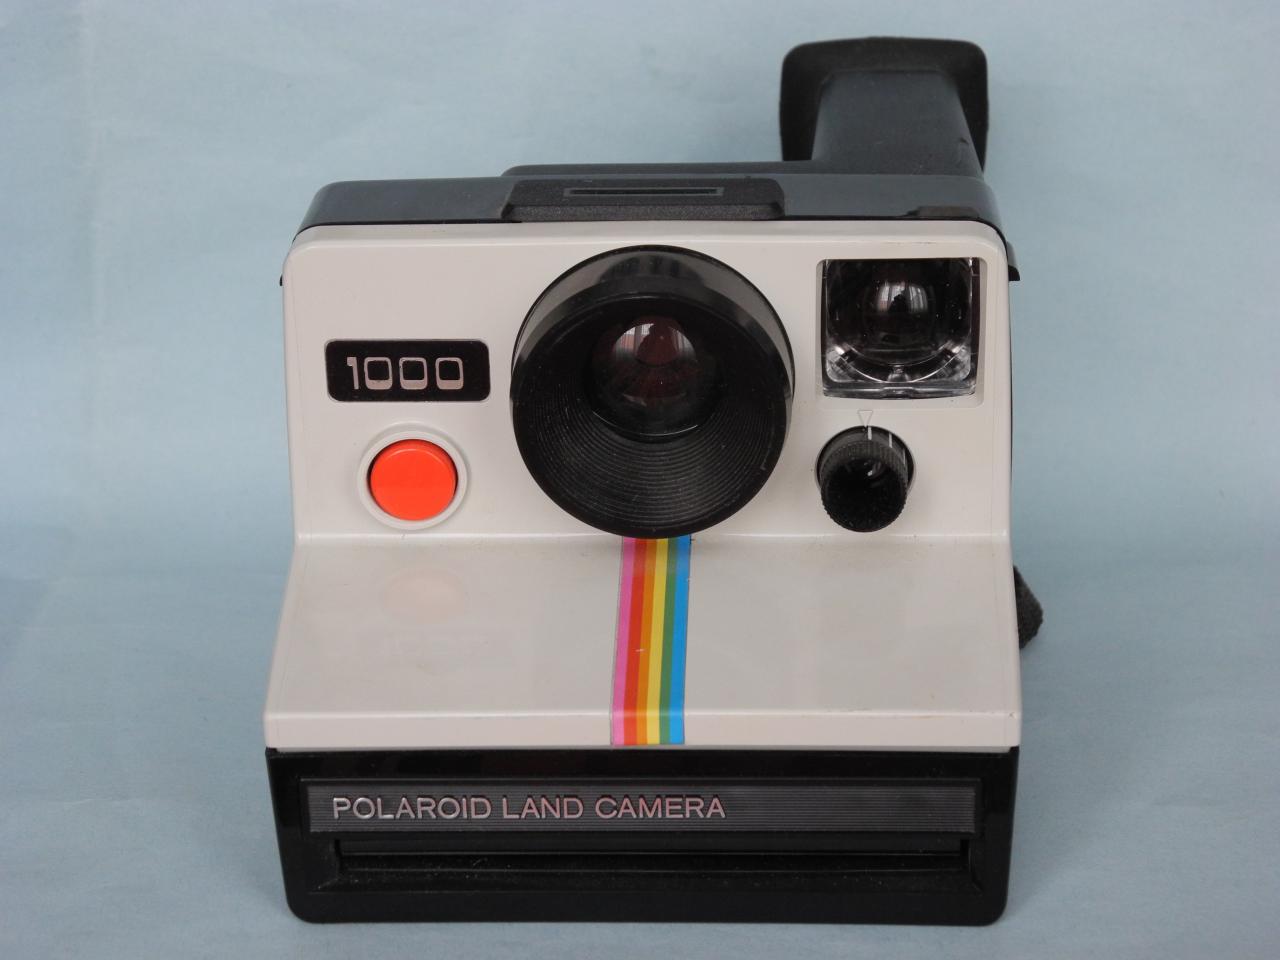 *Polaroid 1000 bouton rouge 1977 Grande-Bretagne*